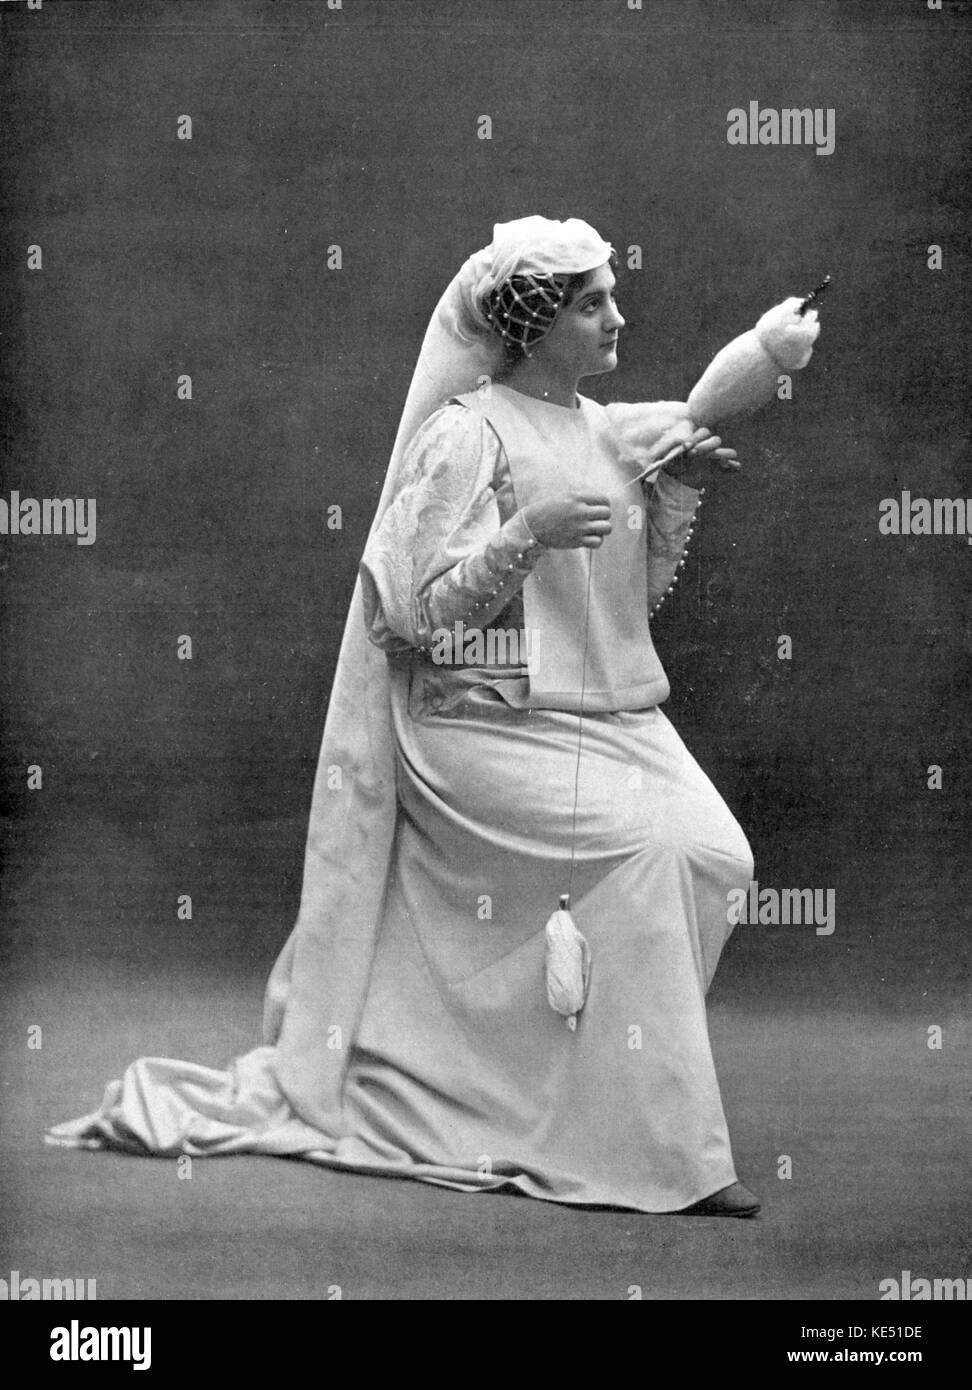 Jeanne Daffetye come Bertrade di Jules Massenet 's opera Grisélidis debutta all'opéra-comique di Parigi, Francia. Il 20 novembre 1901. JM: Il compositore francese, 12 maggio 1842 - 13 agosto 1912 JD: soprano francese Foto Stock